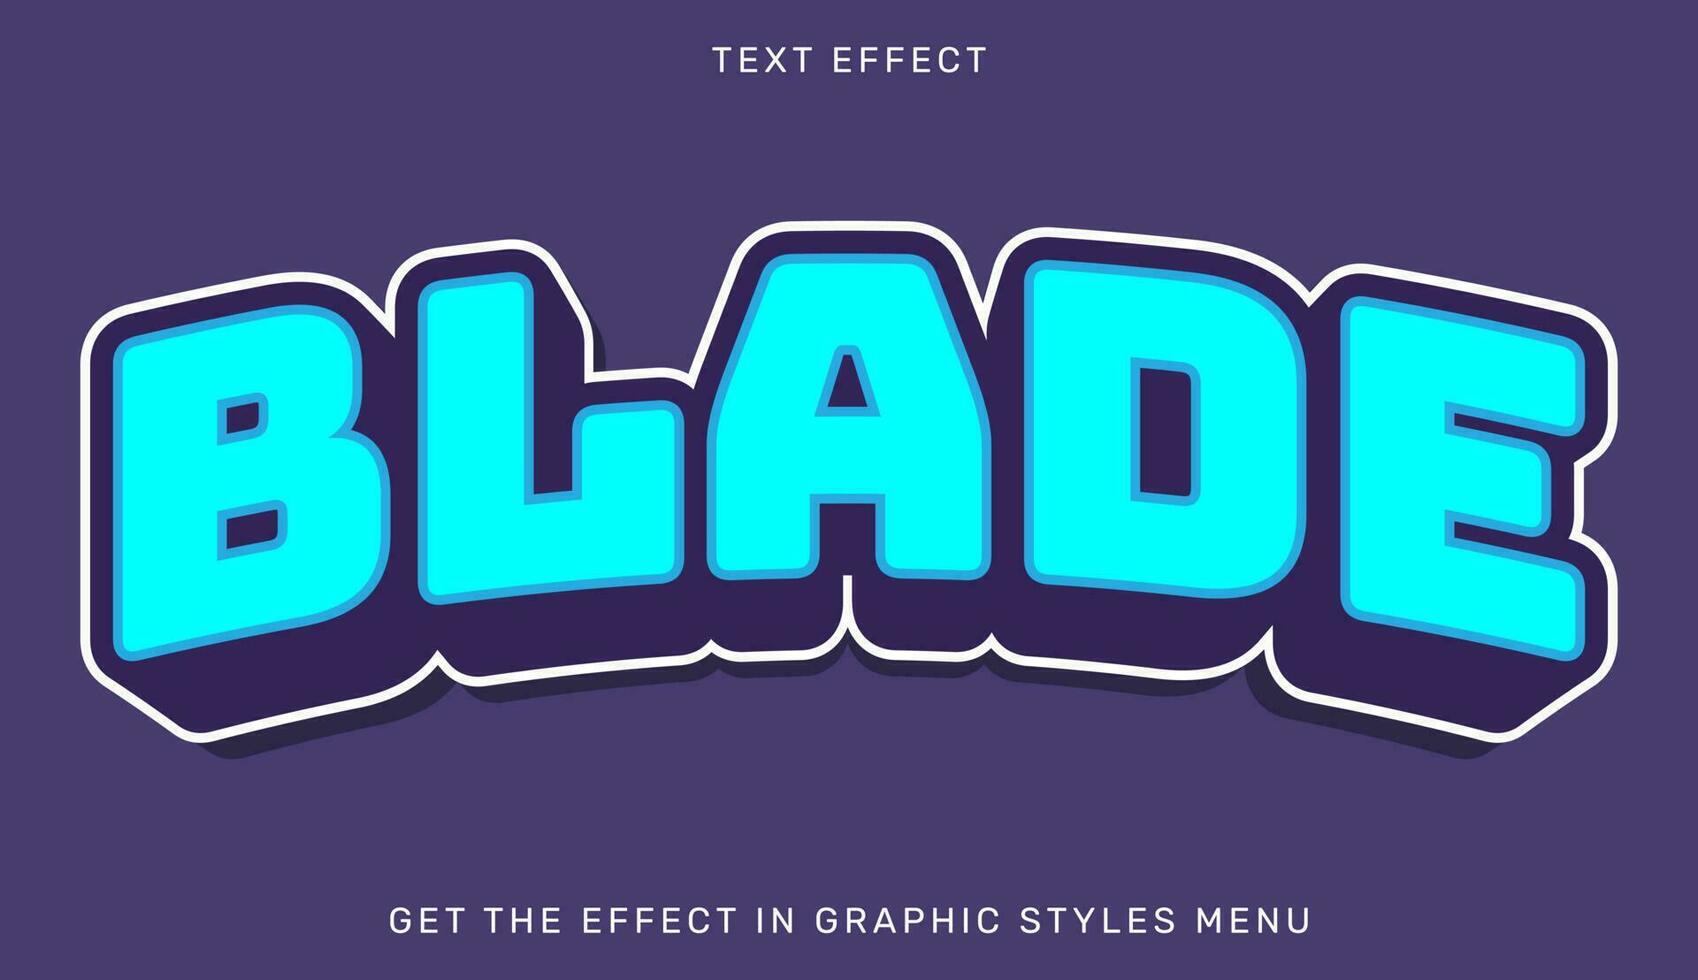 bewerkbare blad tekst effect in 3d stijl vector